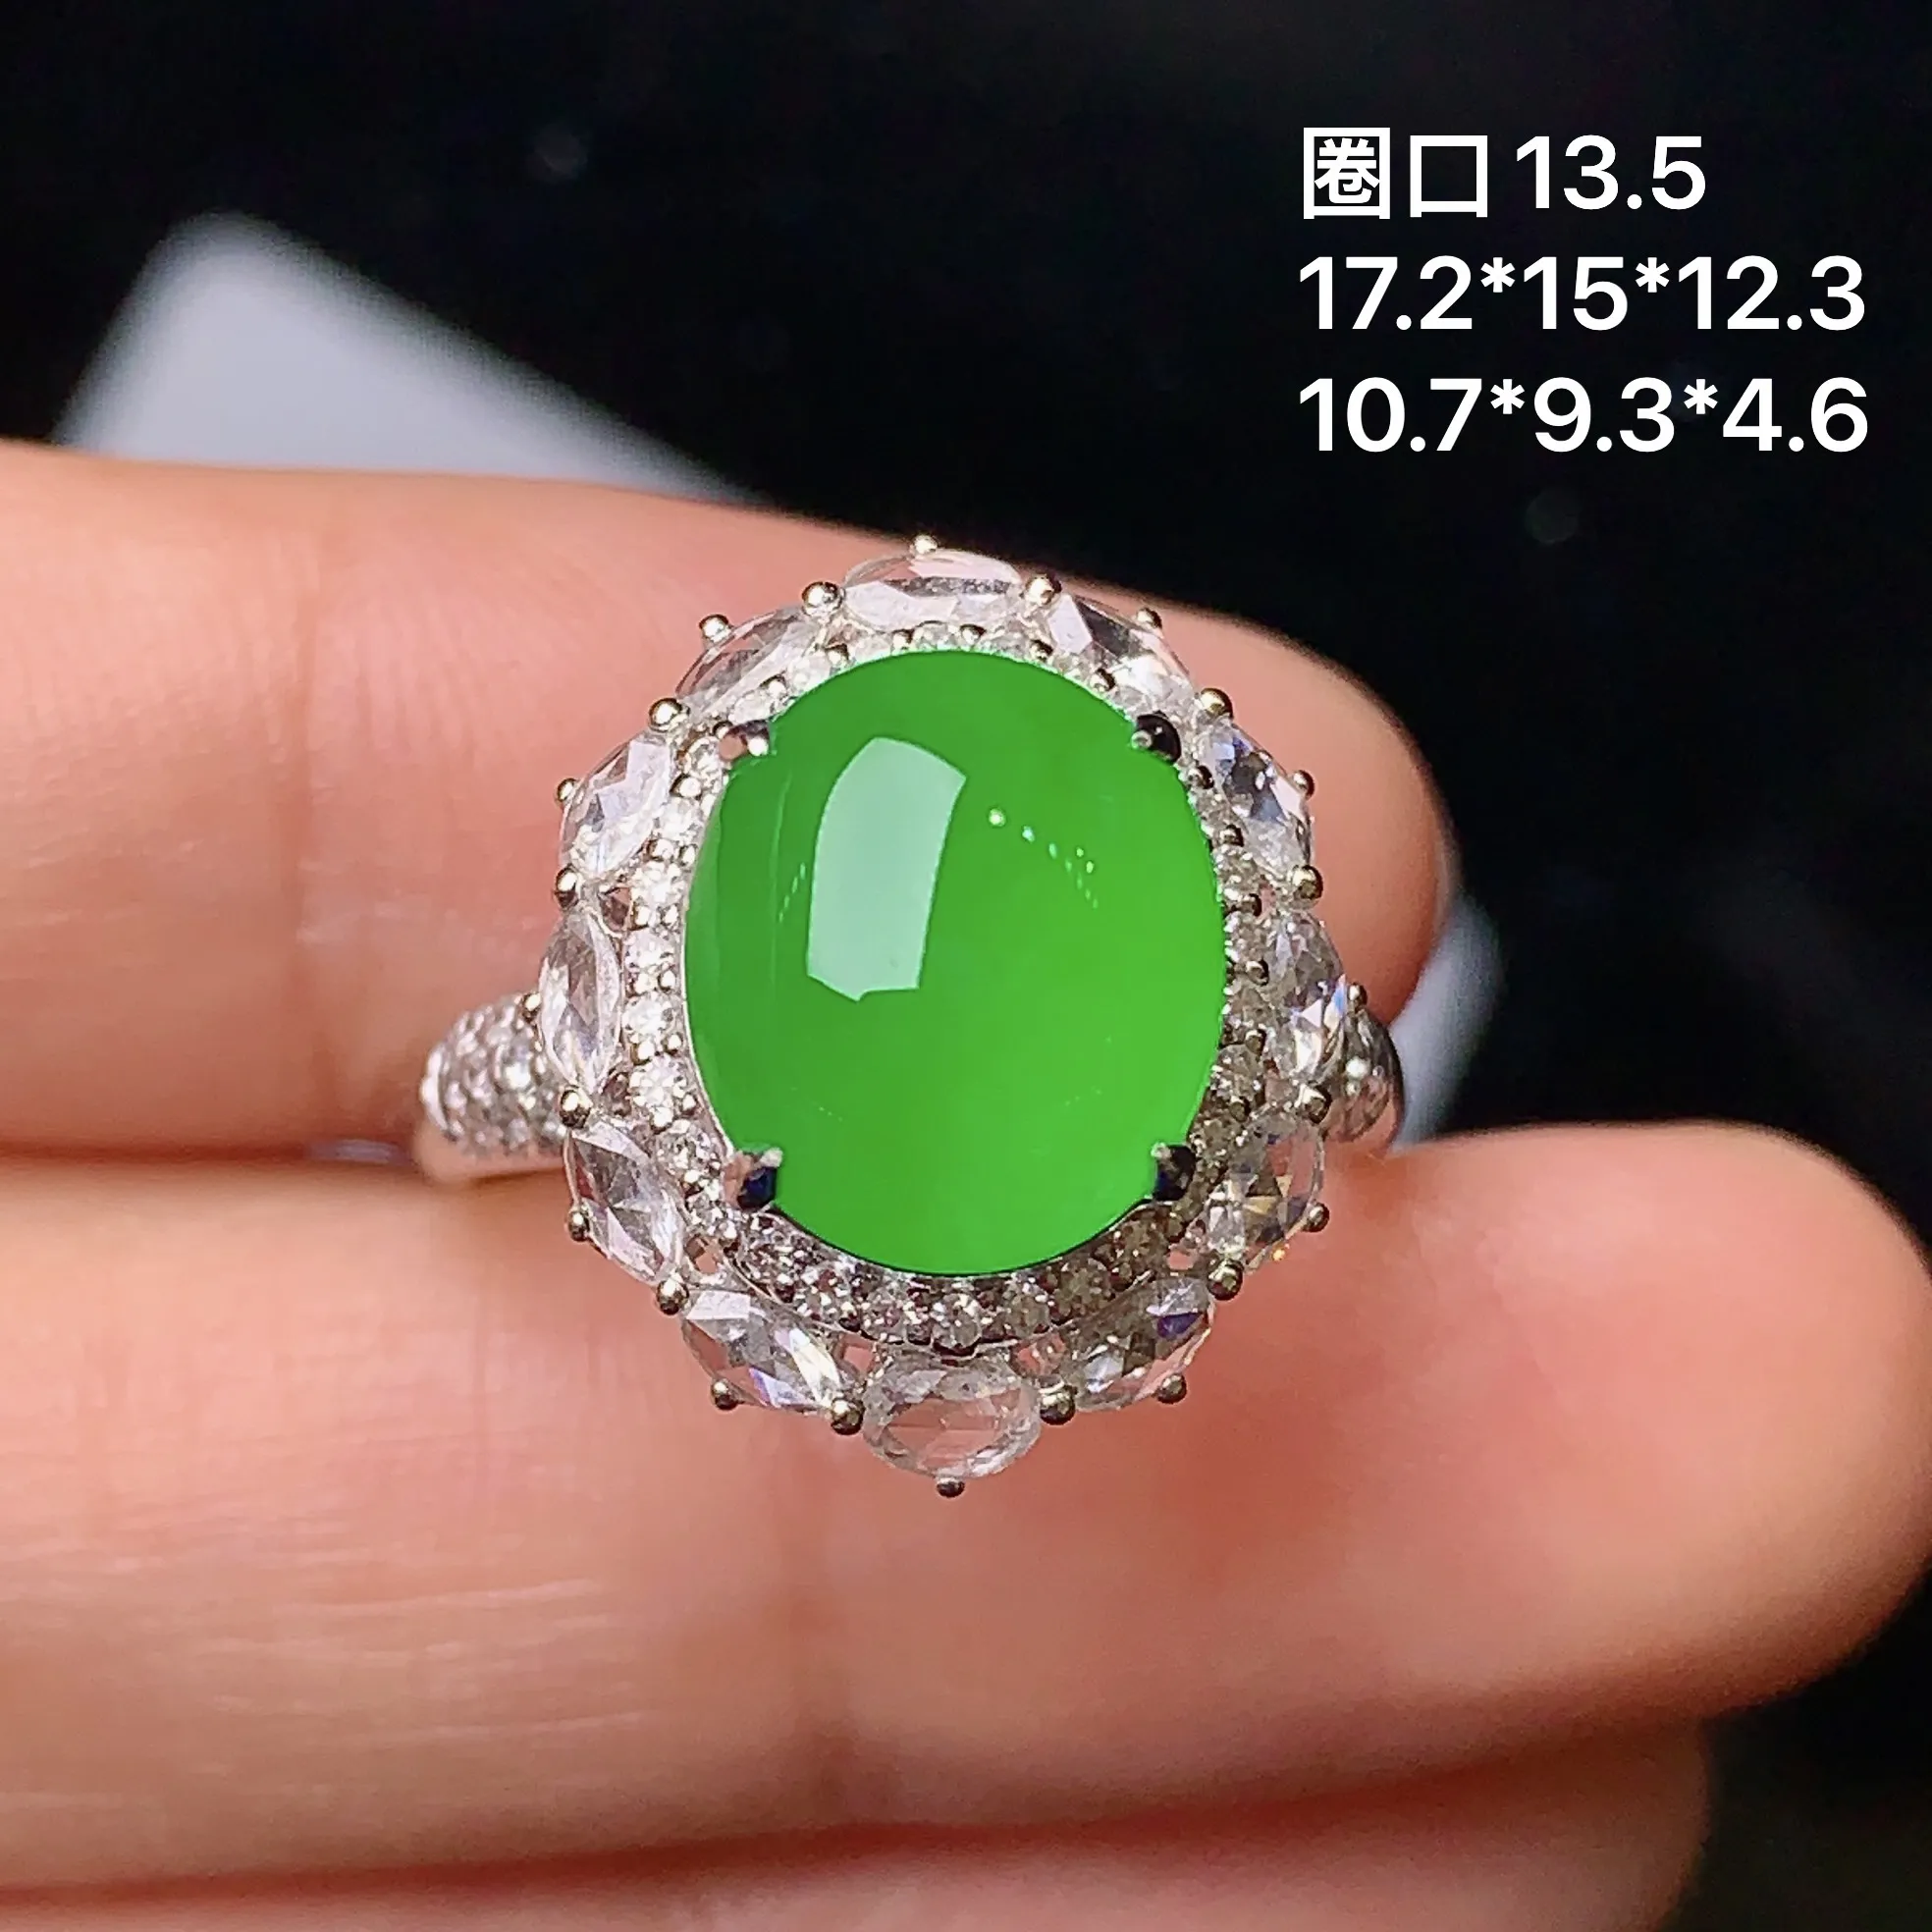 18k金钻镶嵌满绿蛋面戒指 玉质细腻 色泽艳丽 款式新颖别致 圈口13.5 整体尺寸17.2*15*12.3